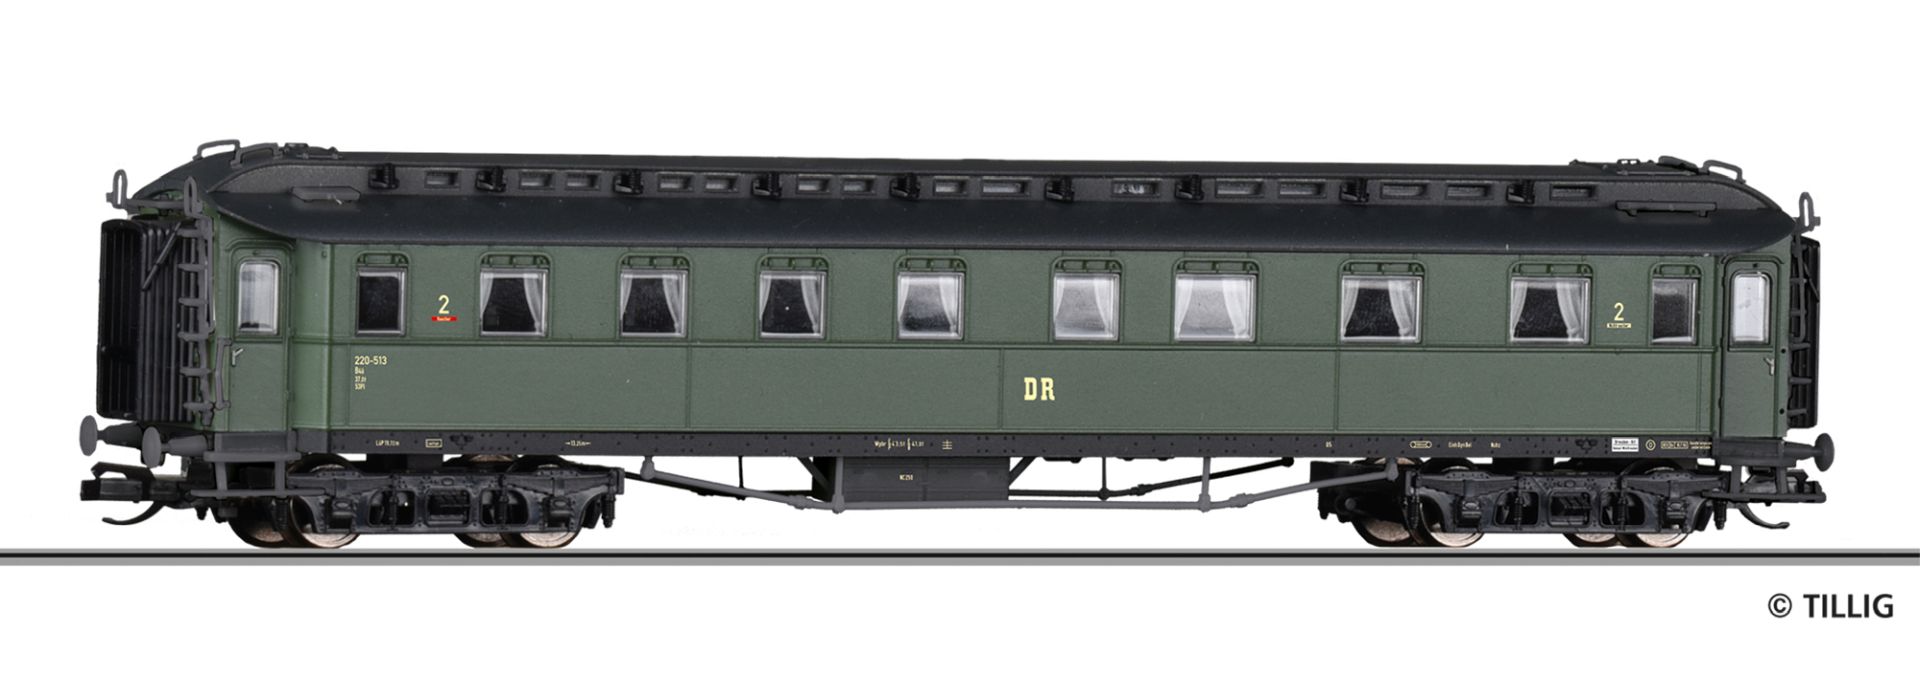 Tillig 12004 - Personenwagen B4ü, 2. Klasse, DR, Ep.III